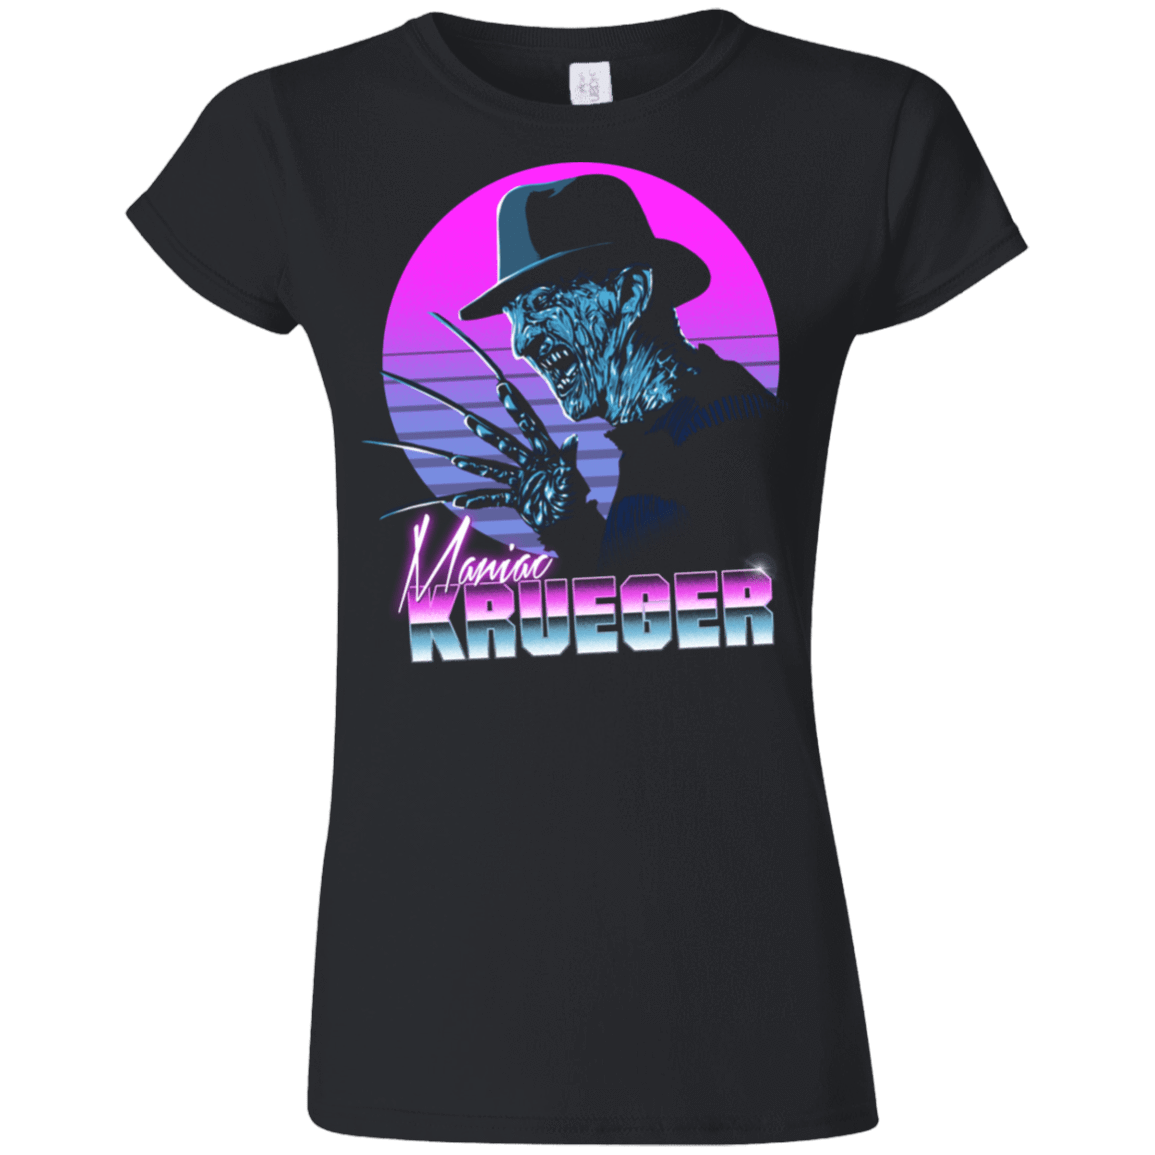 T-Shirts Black / S Retro Krueger Junior Slimmer-Fit T-Shirt